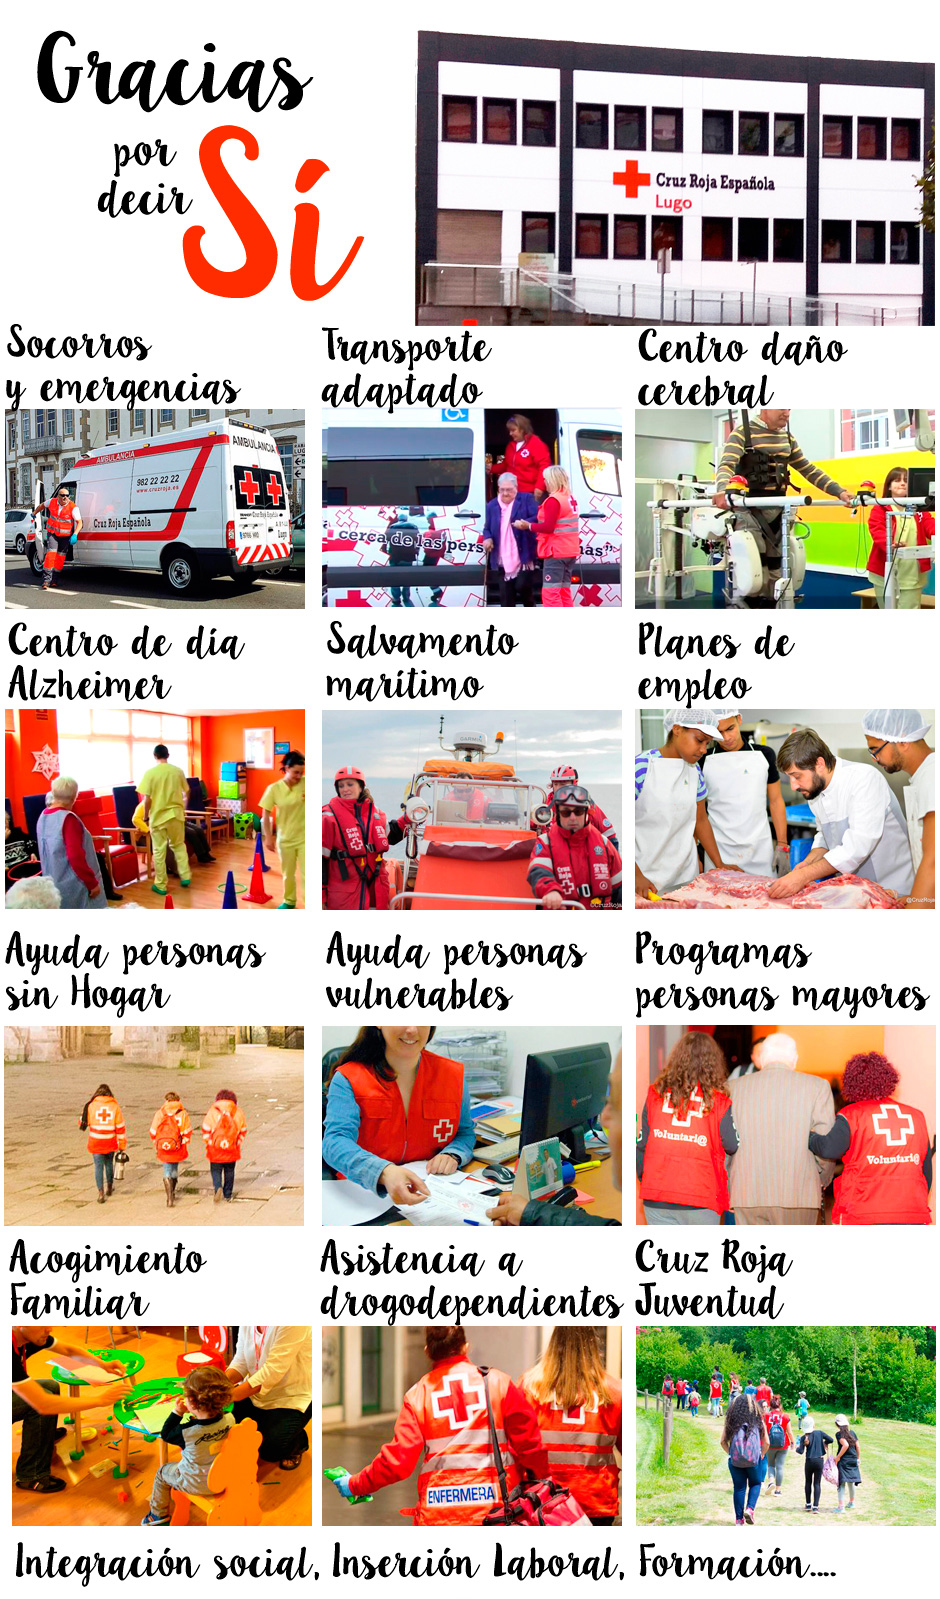 Gracias por decir Sí. Sorteo de Oro. Proyectos de Cruz Roja Española Lugo